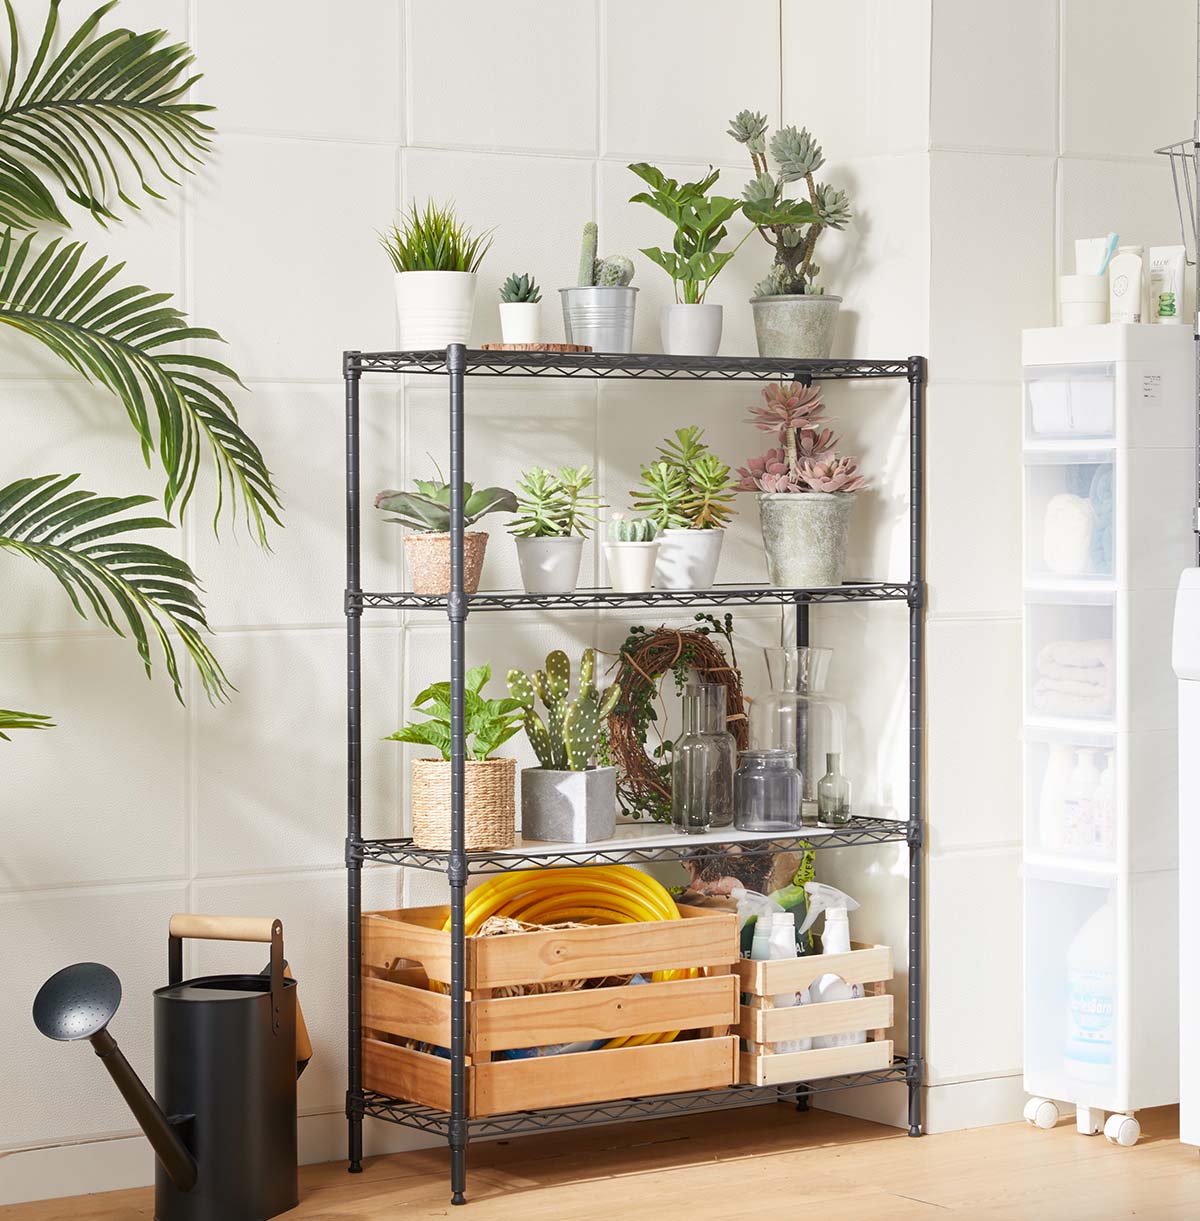 4-Tier Indoor Outdoor Plant Display Shelf / Metal Plant Shelf / Metal Plant Stand / Plant Rack / Flower Pot Organizer / Flower Display Rack